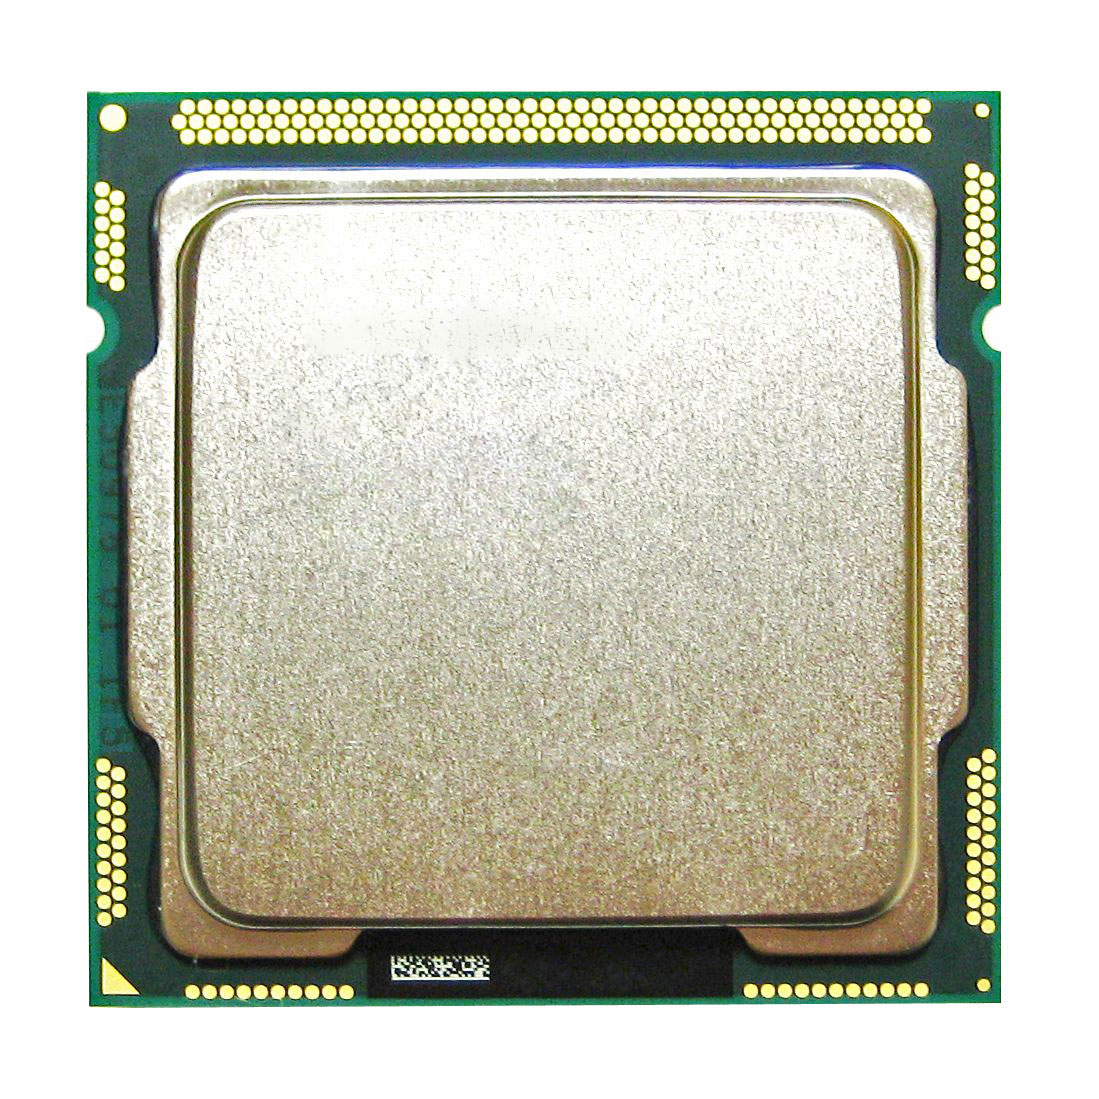 BXC80623I52400S Intel Core i5-2400S Quad Core 2.50GHz 5.00GT/s DMI 6MB L3 Cache Socket LGA1155 Desktop Processor